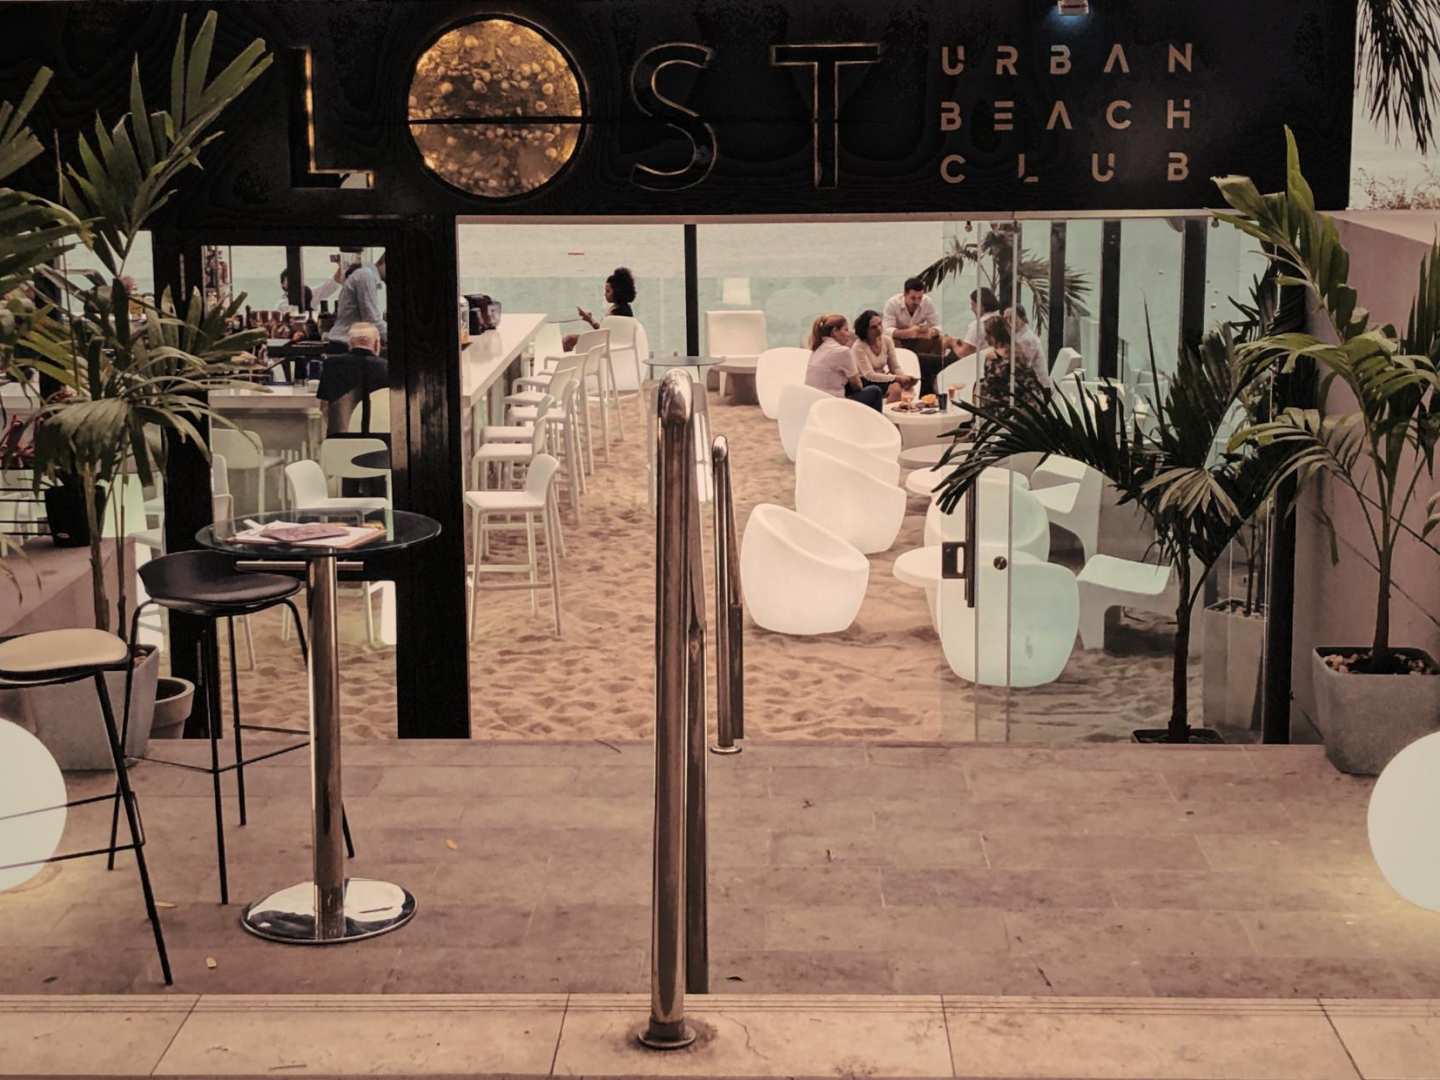 Lost Urban Beach Club